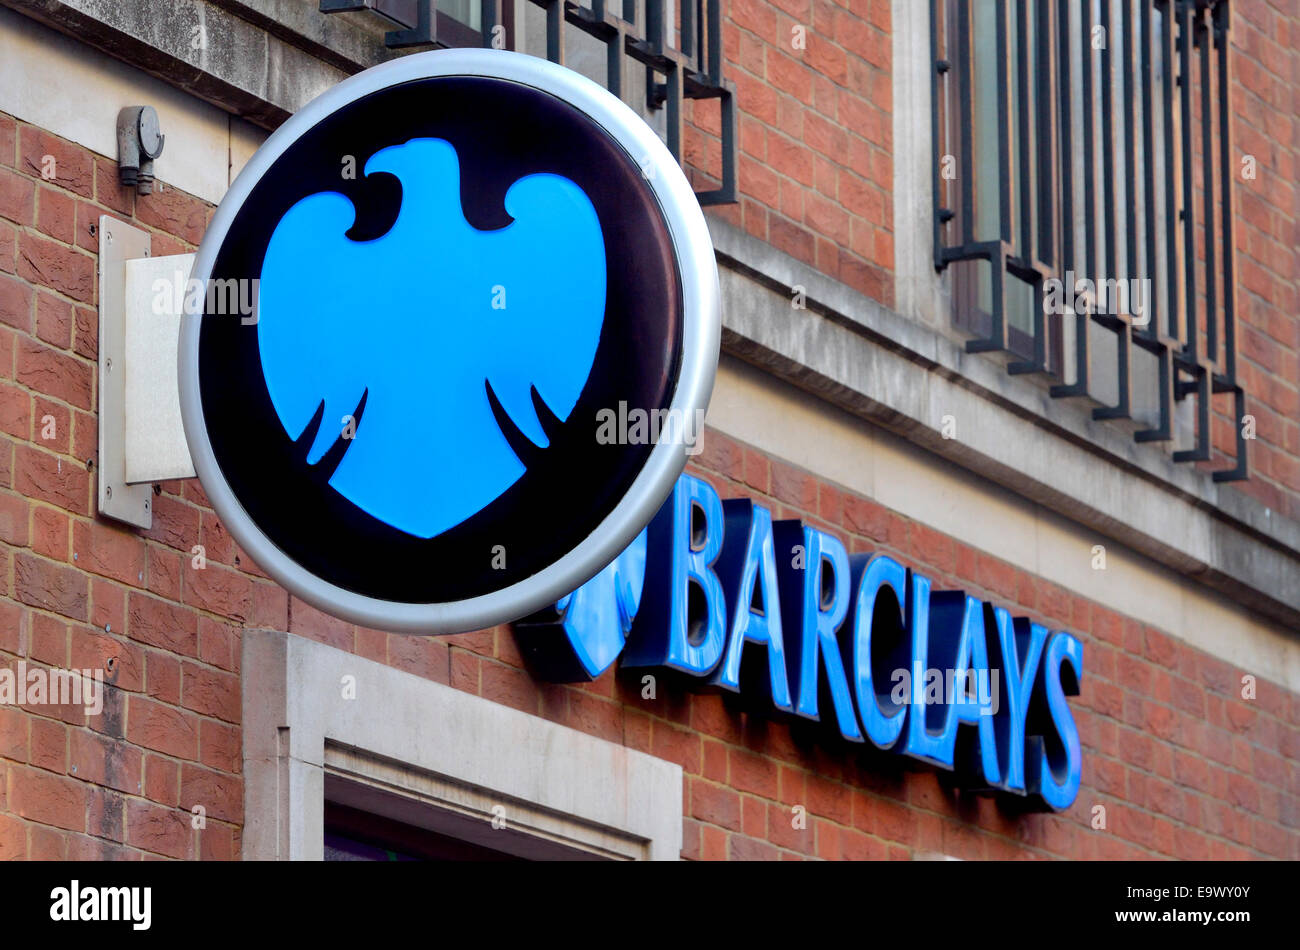 Londres, Angleterre, Royaume-Uni. Signe de la Barclays Bank Banque D'Images